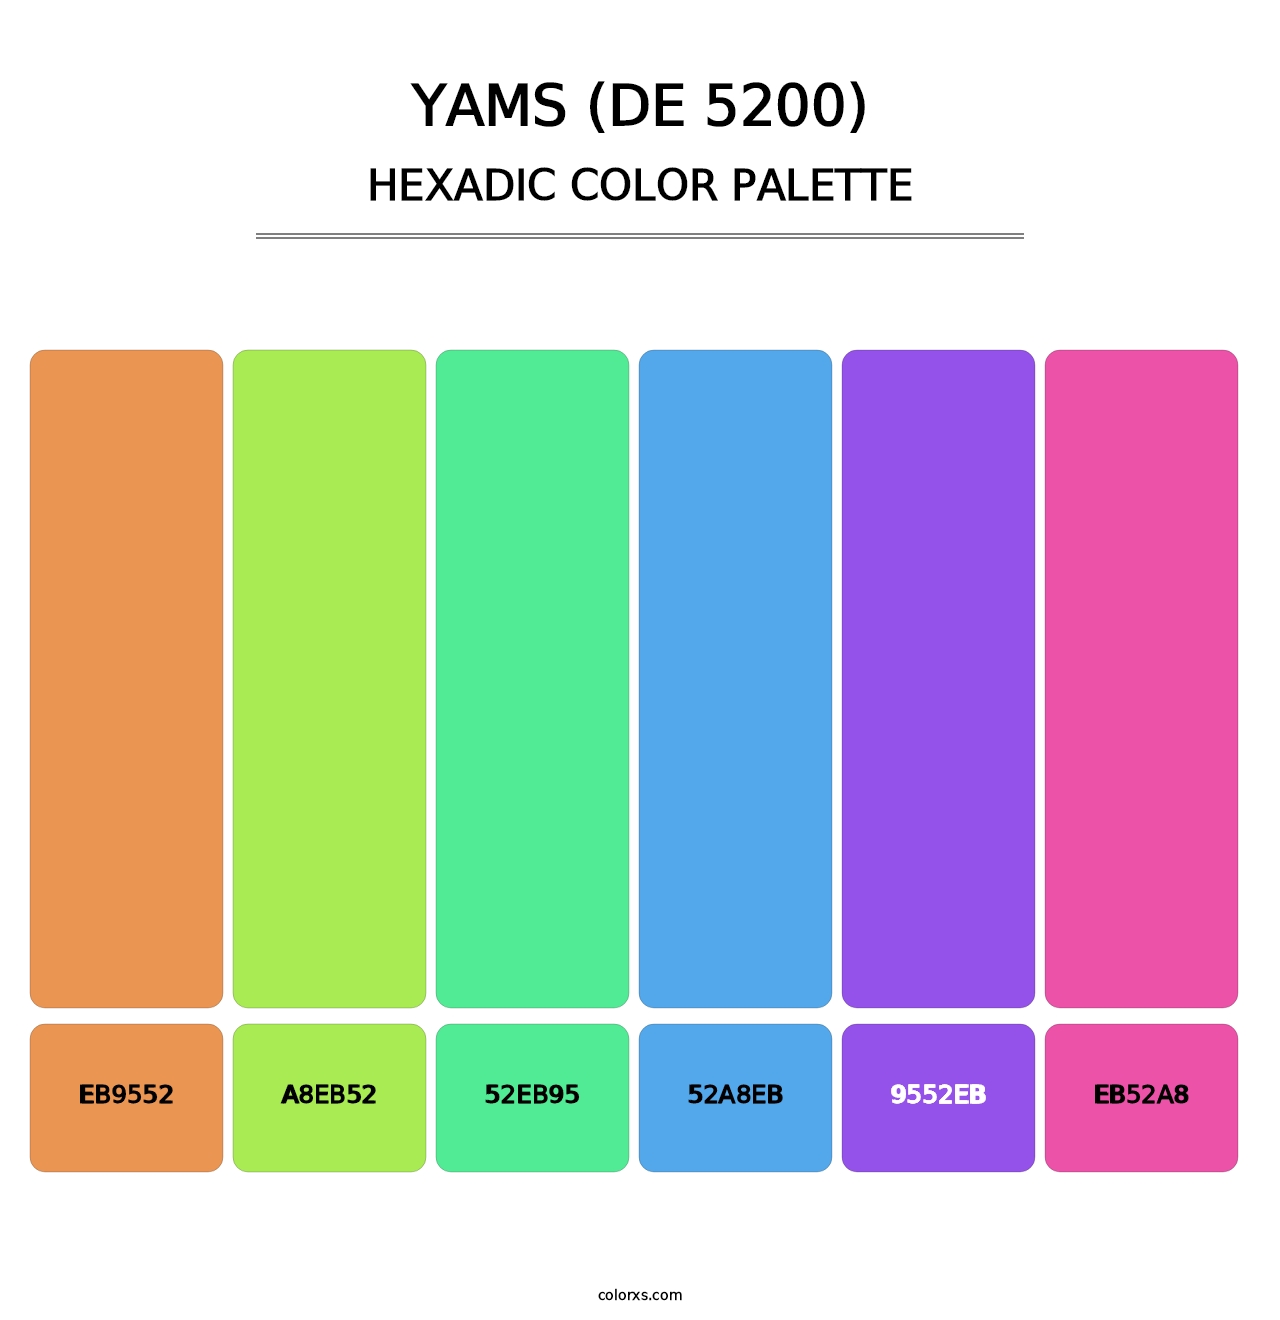 Yams (DE 5200) - Hexadic Color Palette